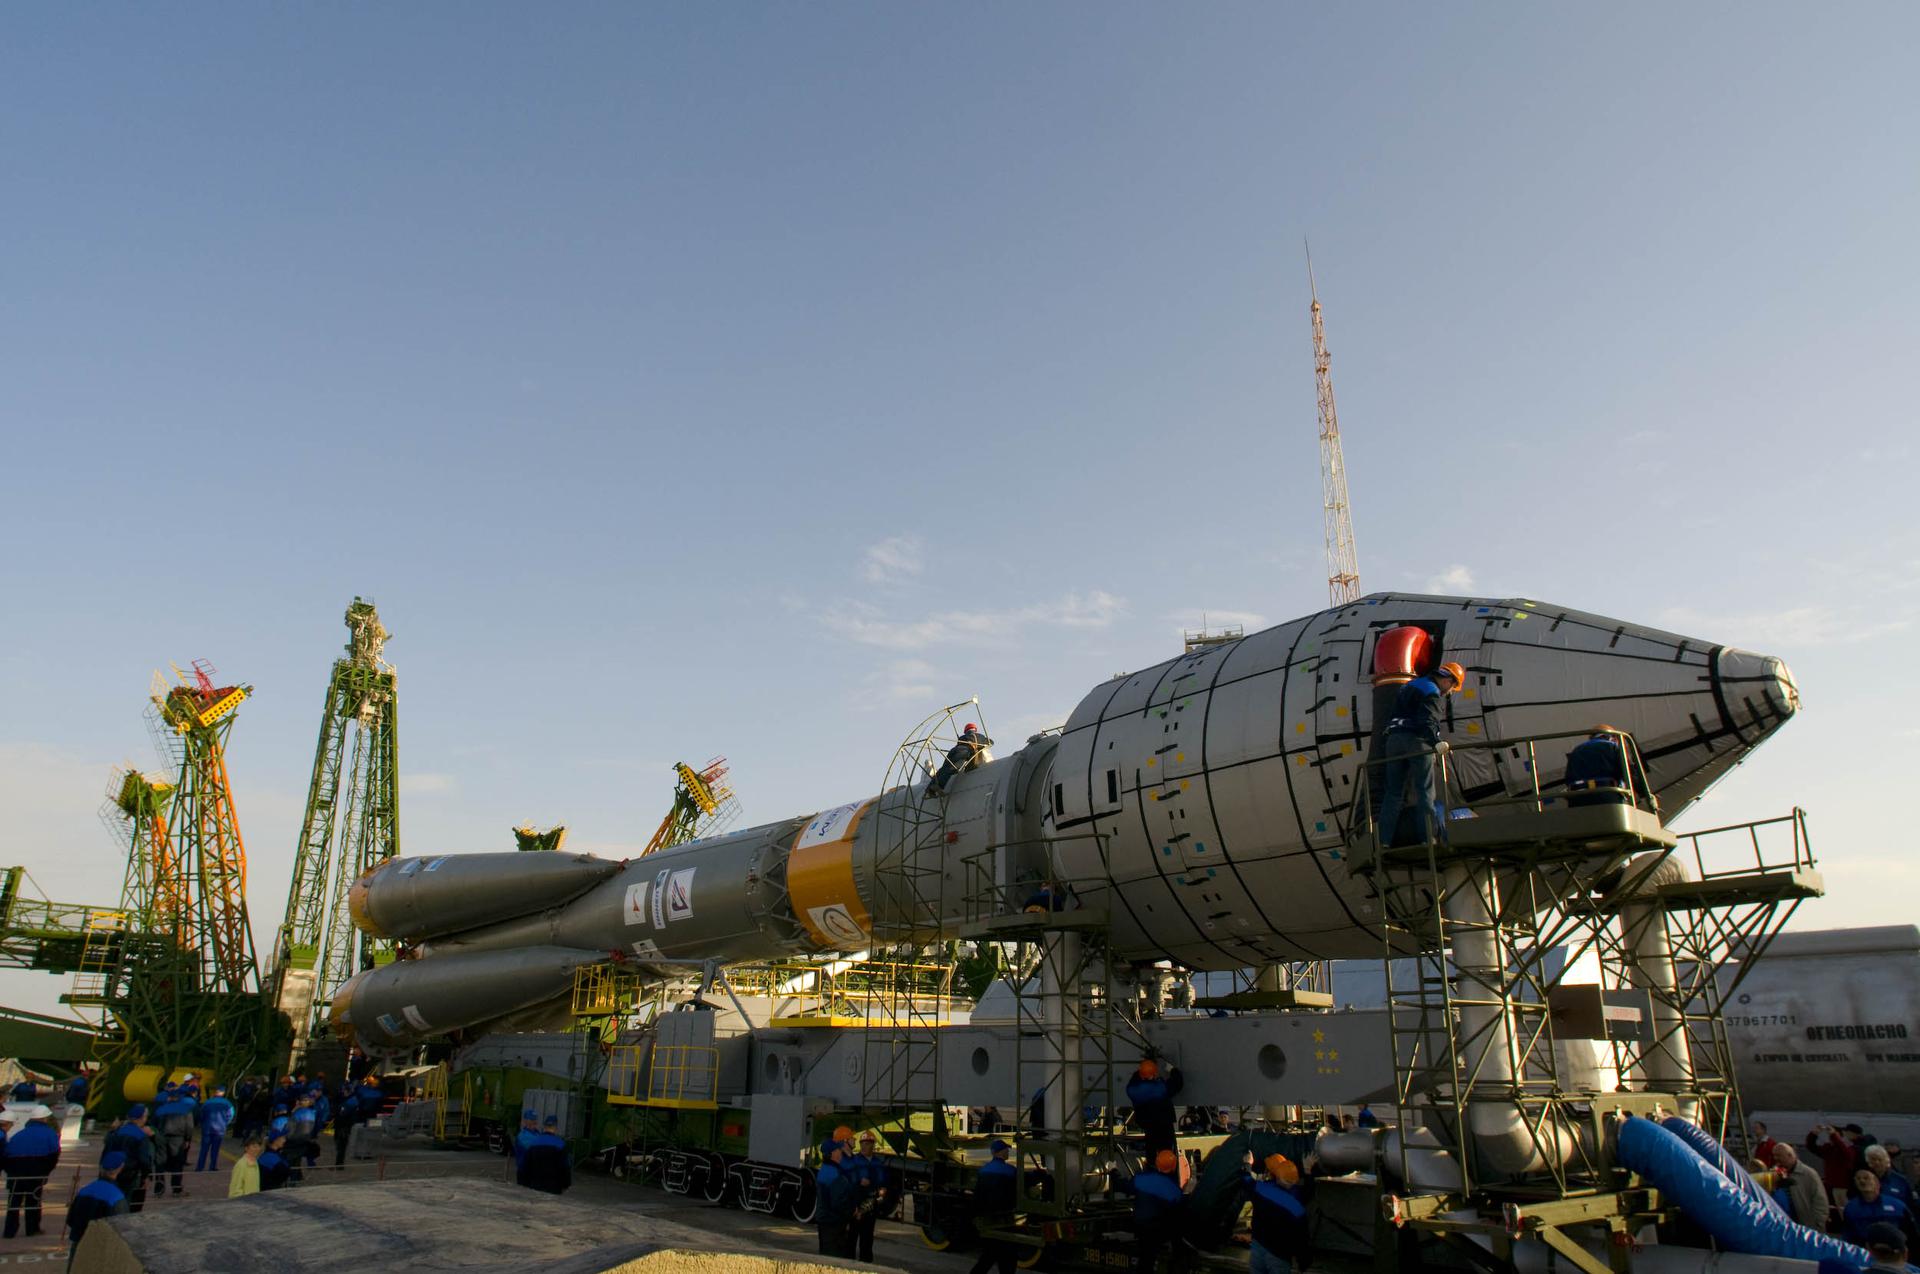 Soyuz-FG Fregat